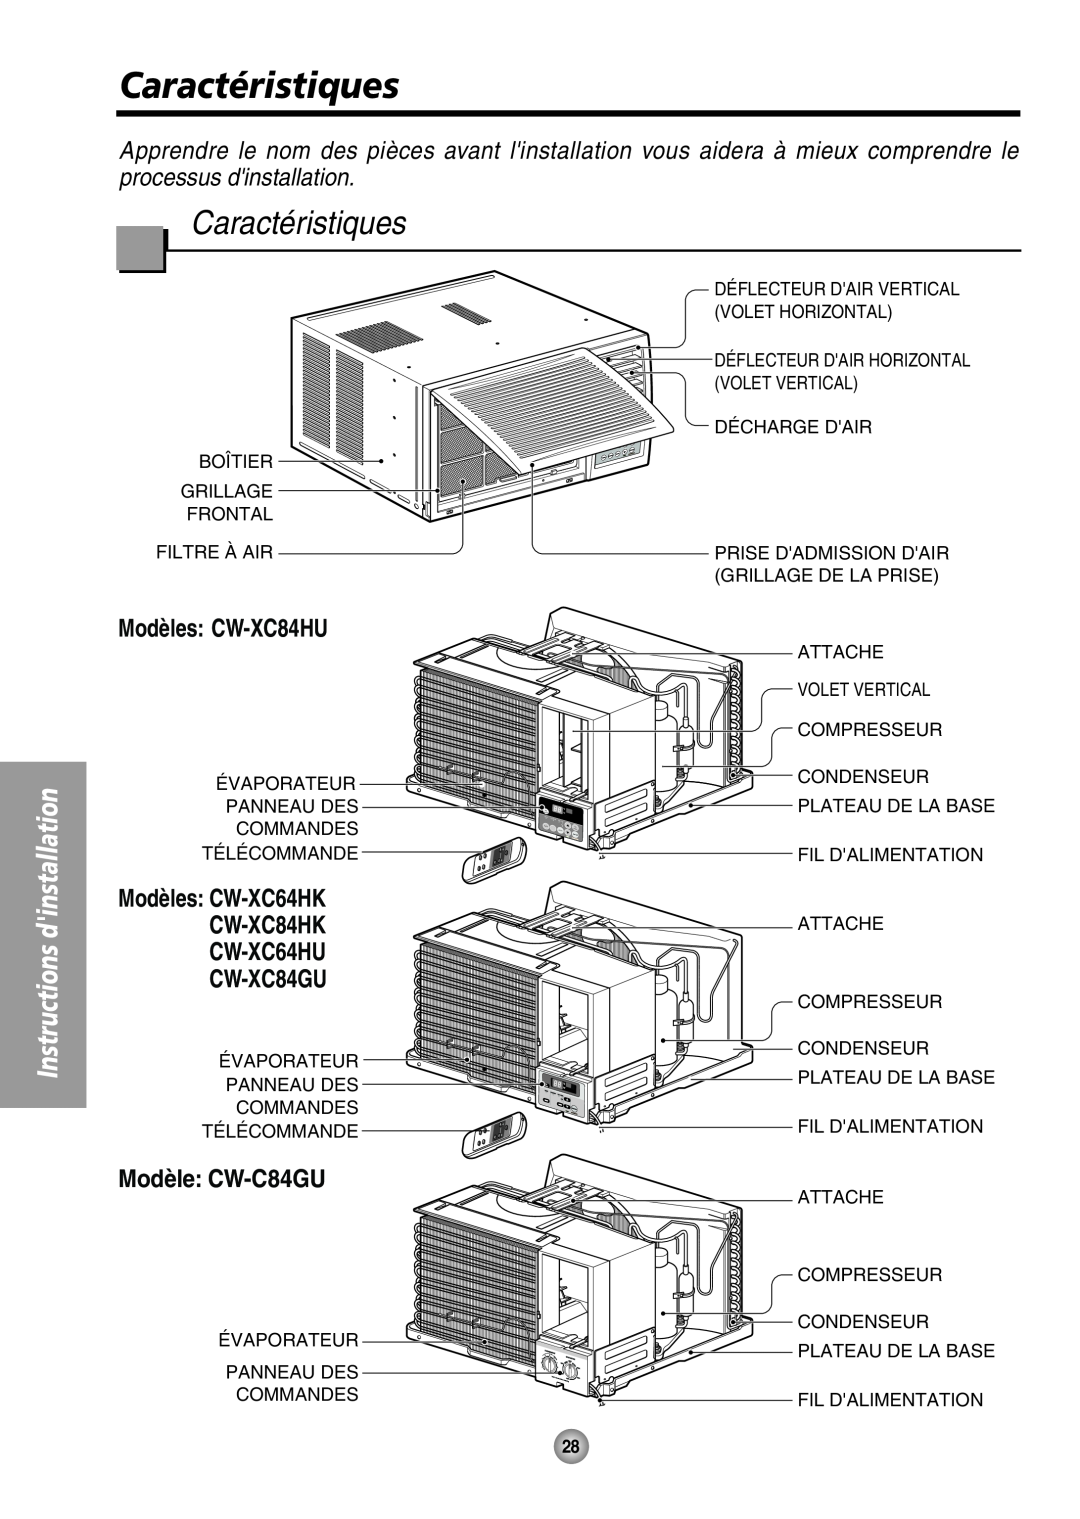 Panasonic manual Caractéristiques, Modèles: CW-XC84HU, Modèles CW-XC64HK CW-XC84HK CW-XC64HU CW-XC84GU, Modèle: CW-C84GU 